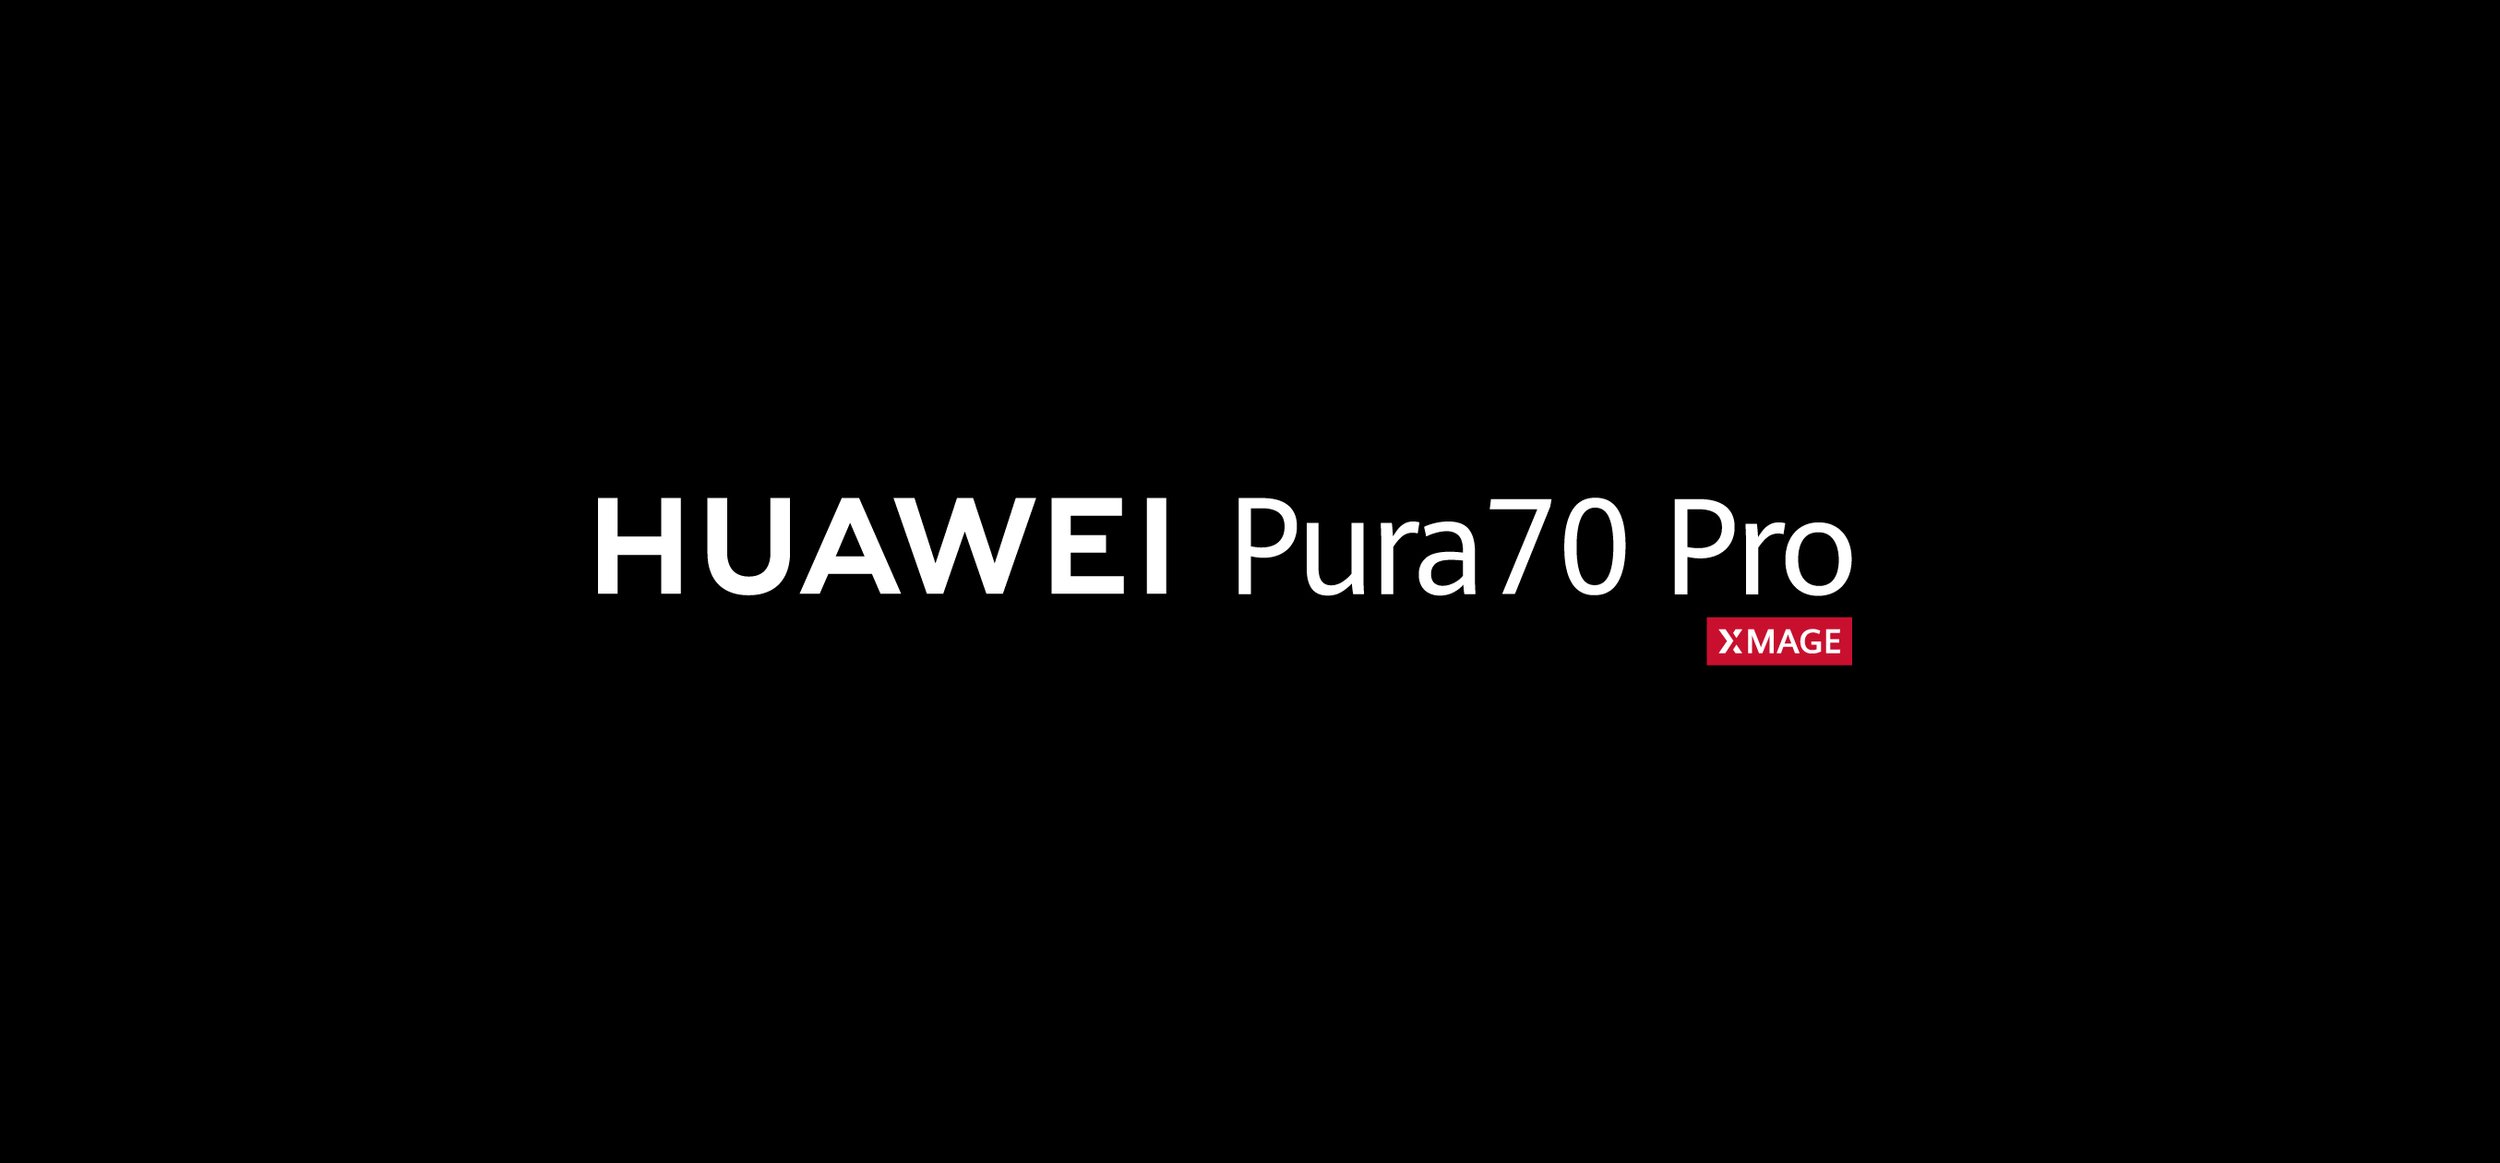 HUAWEI - Pura 70 Pro.jpg